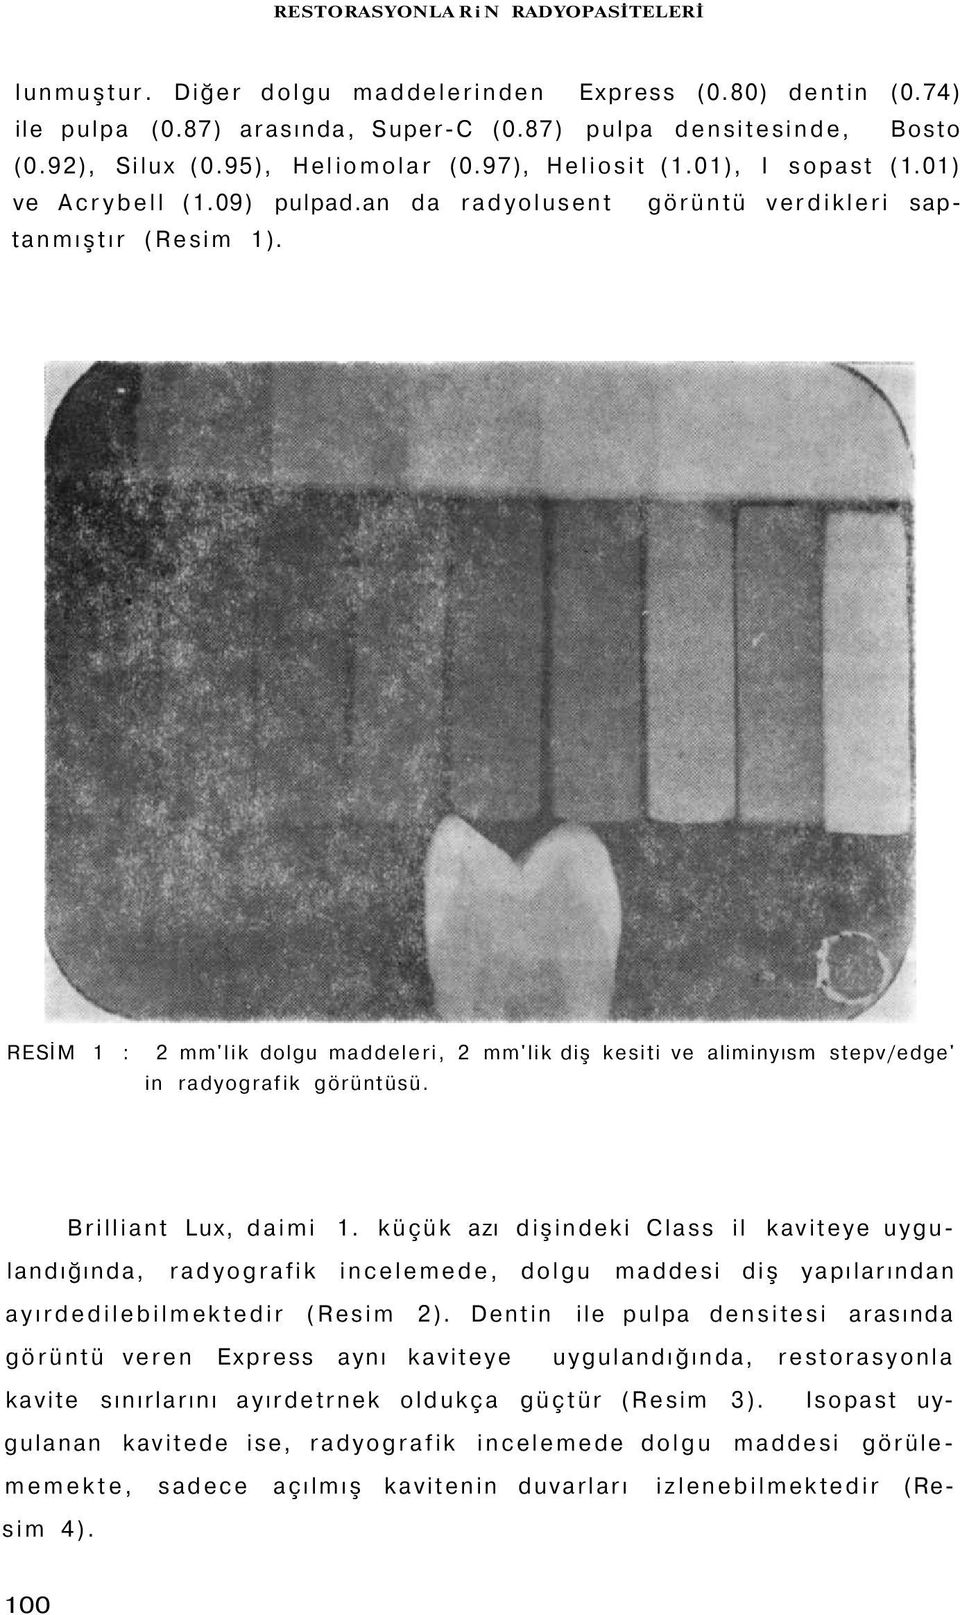 RESİM 1 : 2 mm'lik dolgu maddeleri, 2 mm'lik diş kesiti ve aliminyısm stepv/edge' in radyografik görüntüsü. Brilliant Lux, daimi 1.